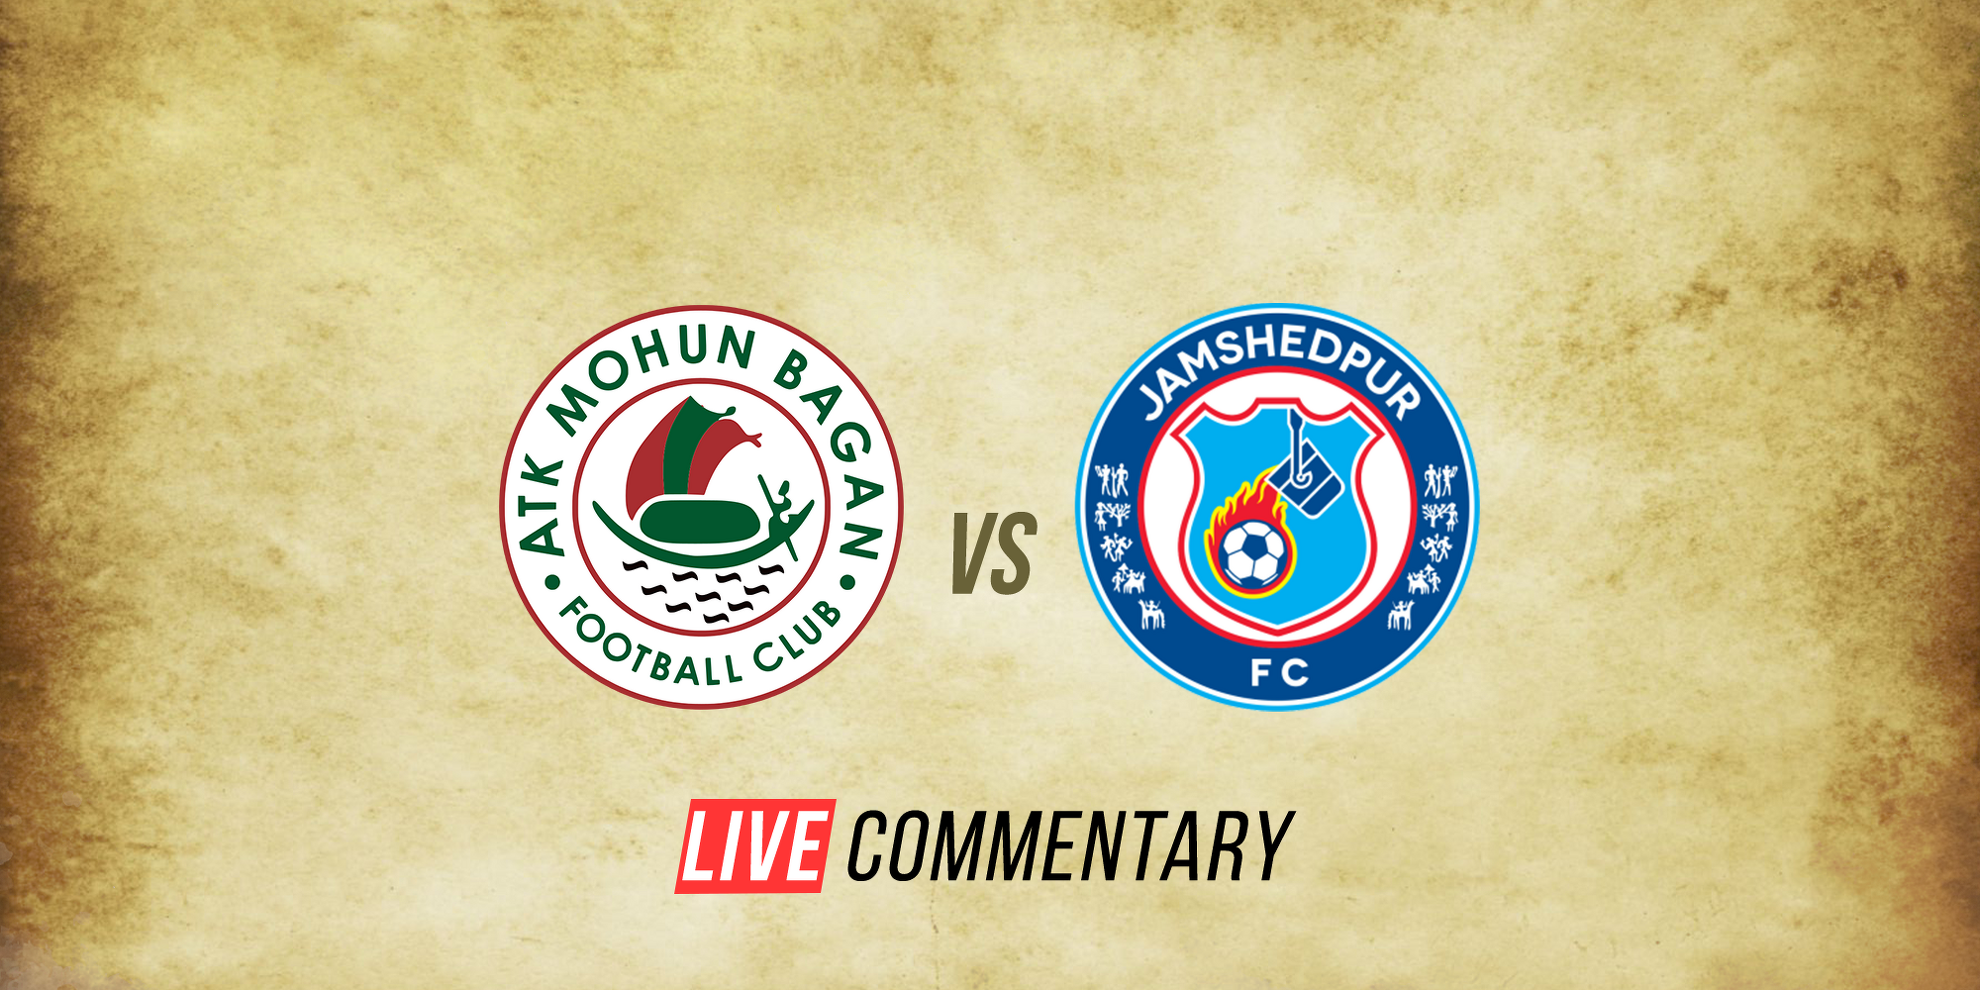 ATK Mohun Bagan vs Jamshedpur FC